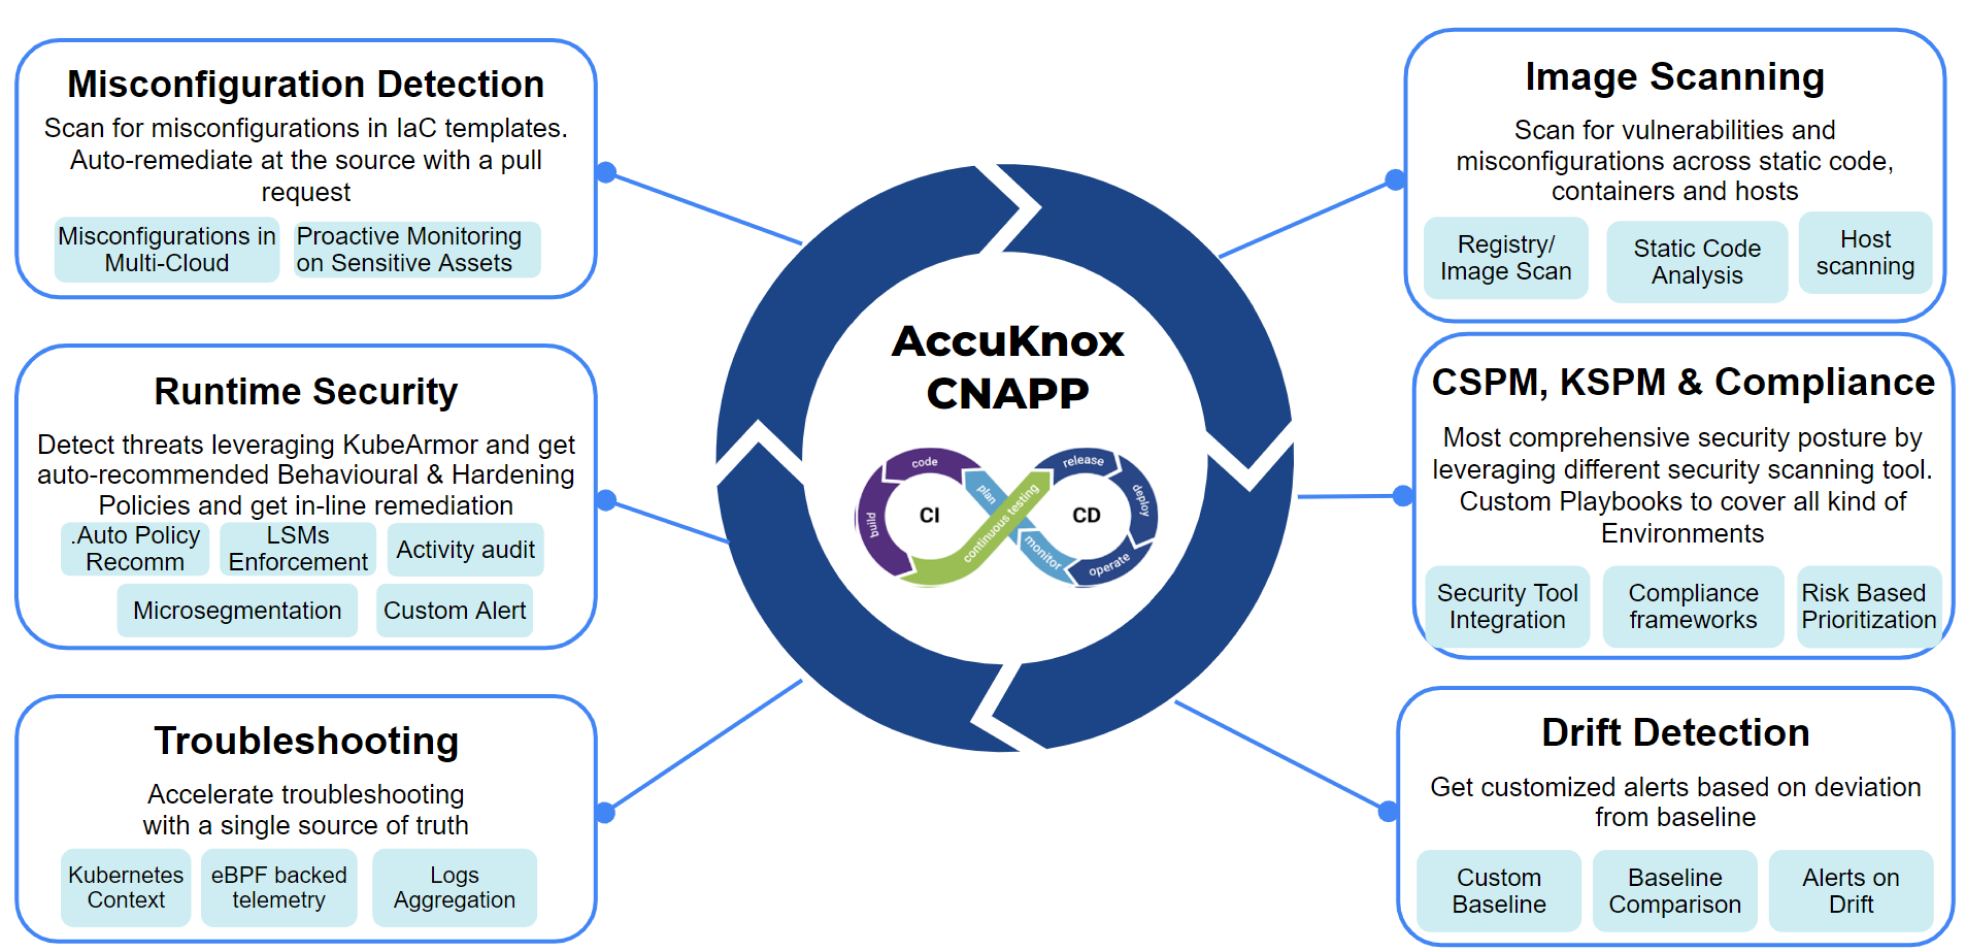 AccuKnox CNAPP Platform Key Differentiators